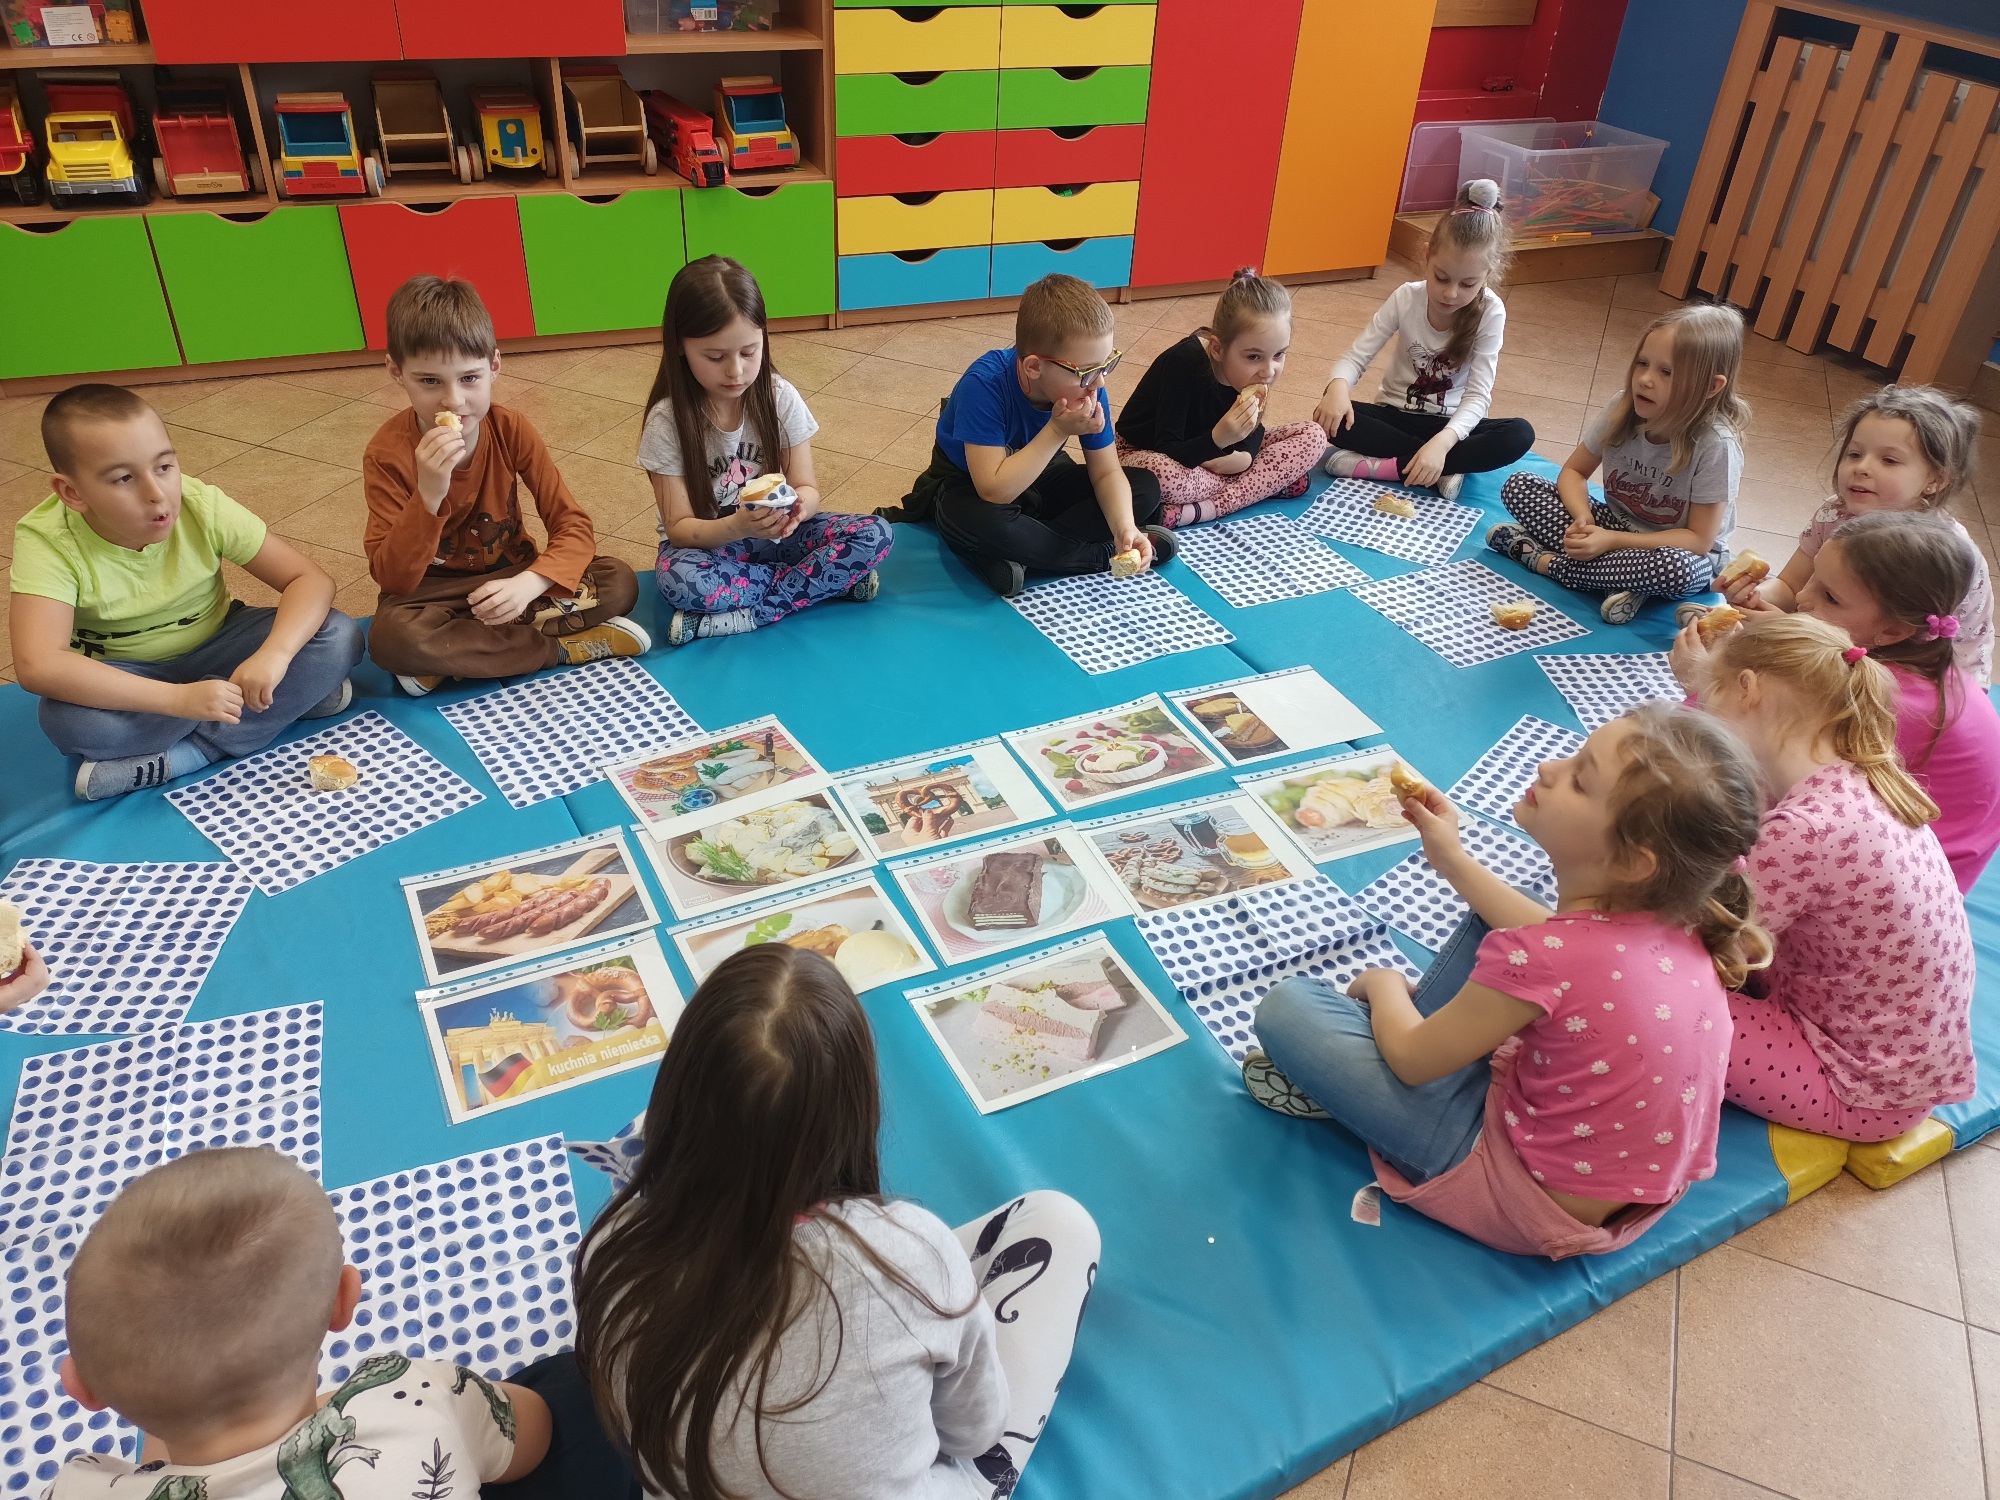 Dzieci siedzące w okręgu na niebieskim materacu. Przed nimi leżą kolorowe obrazki z potrawami